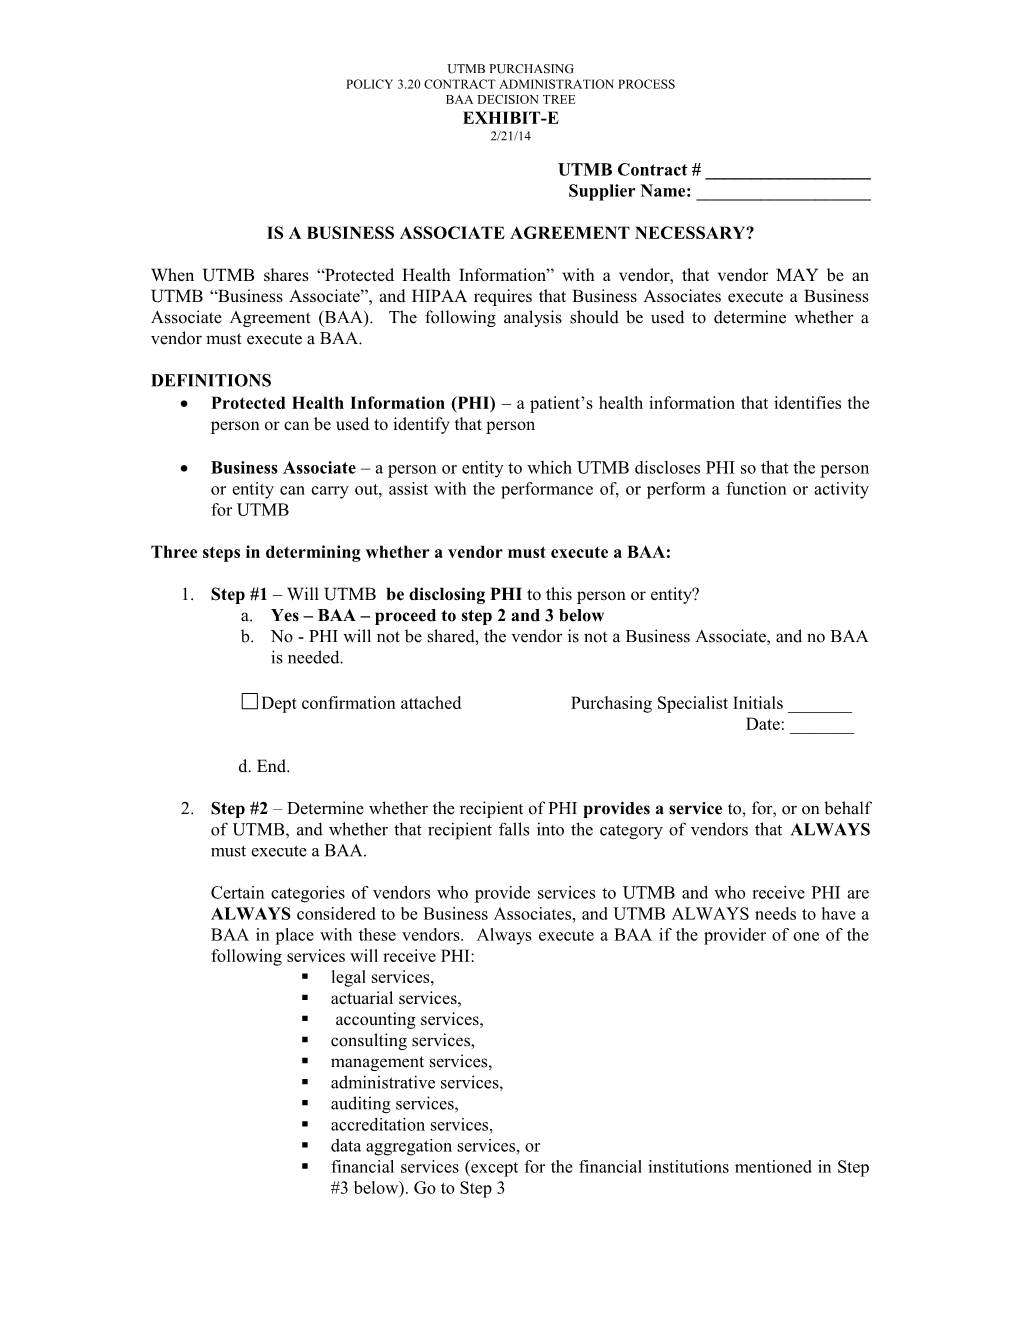 Business Associate Agreements - Jan. 2006 (00004348;2)